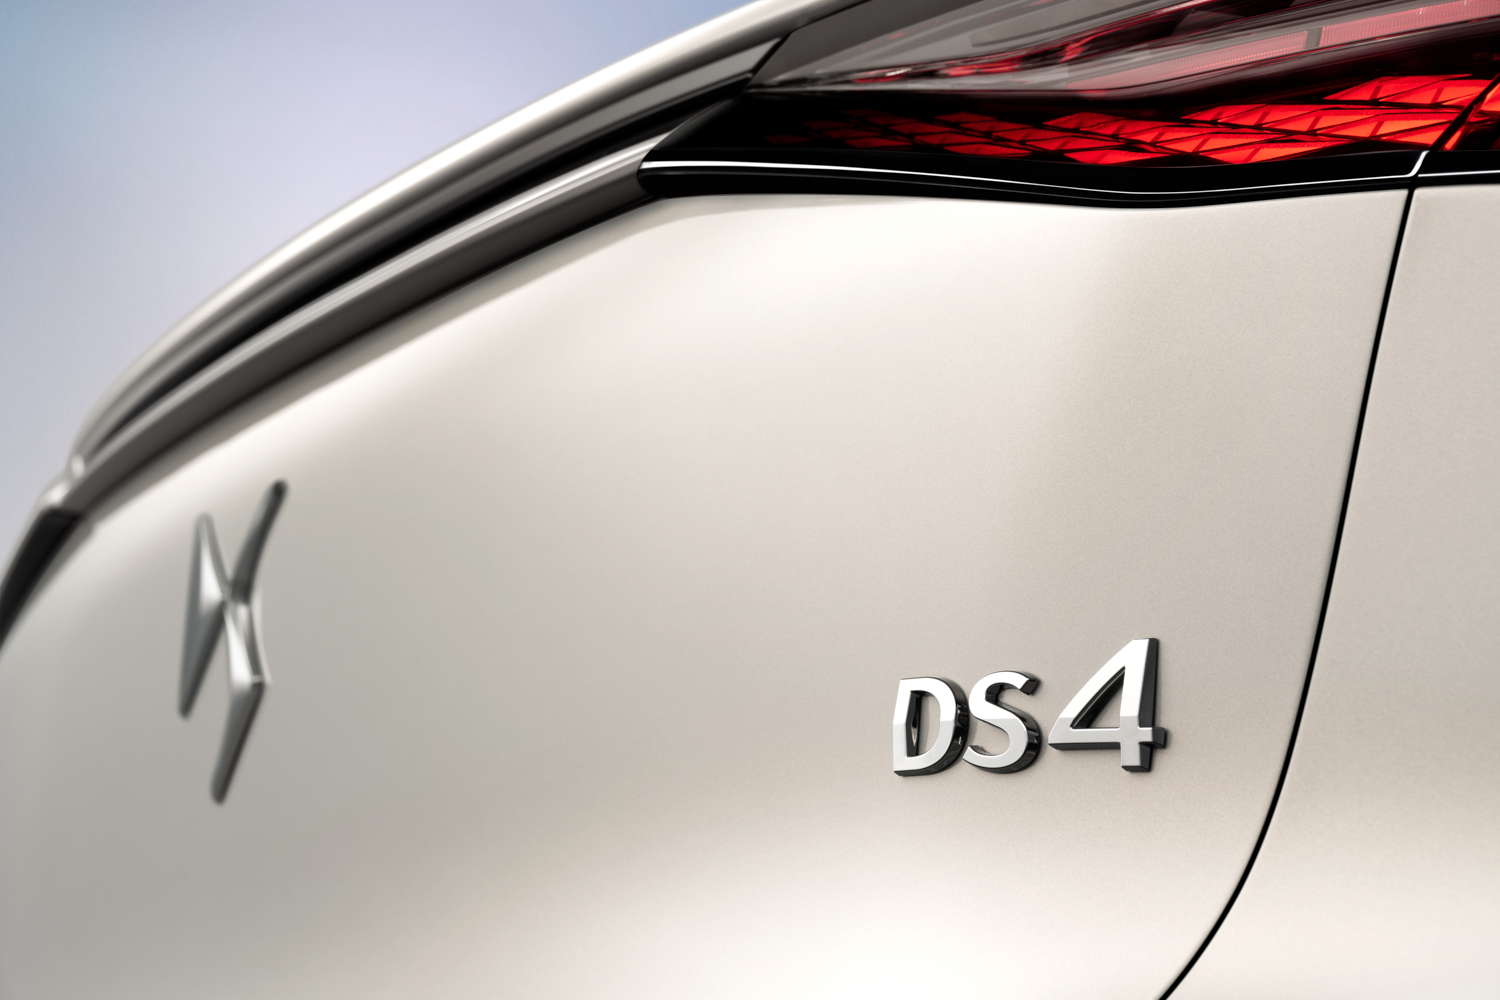 DS 4 targets premium hatchback elite